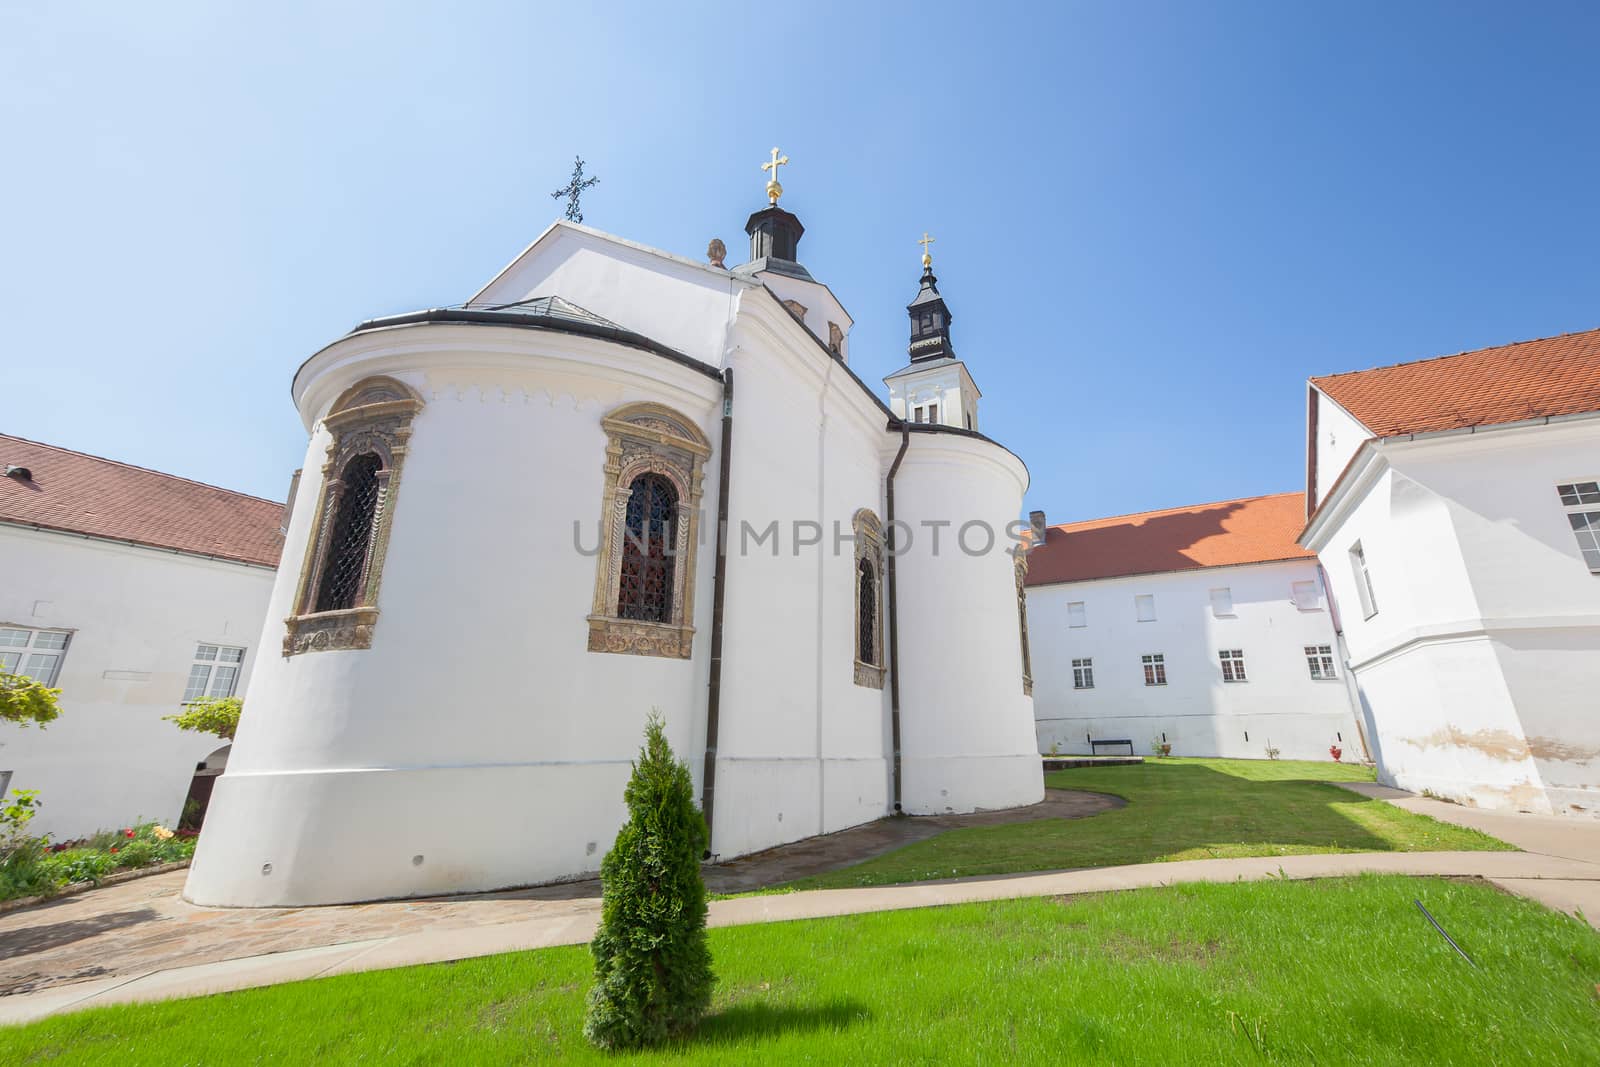 Krusedol Monastery by Slast20